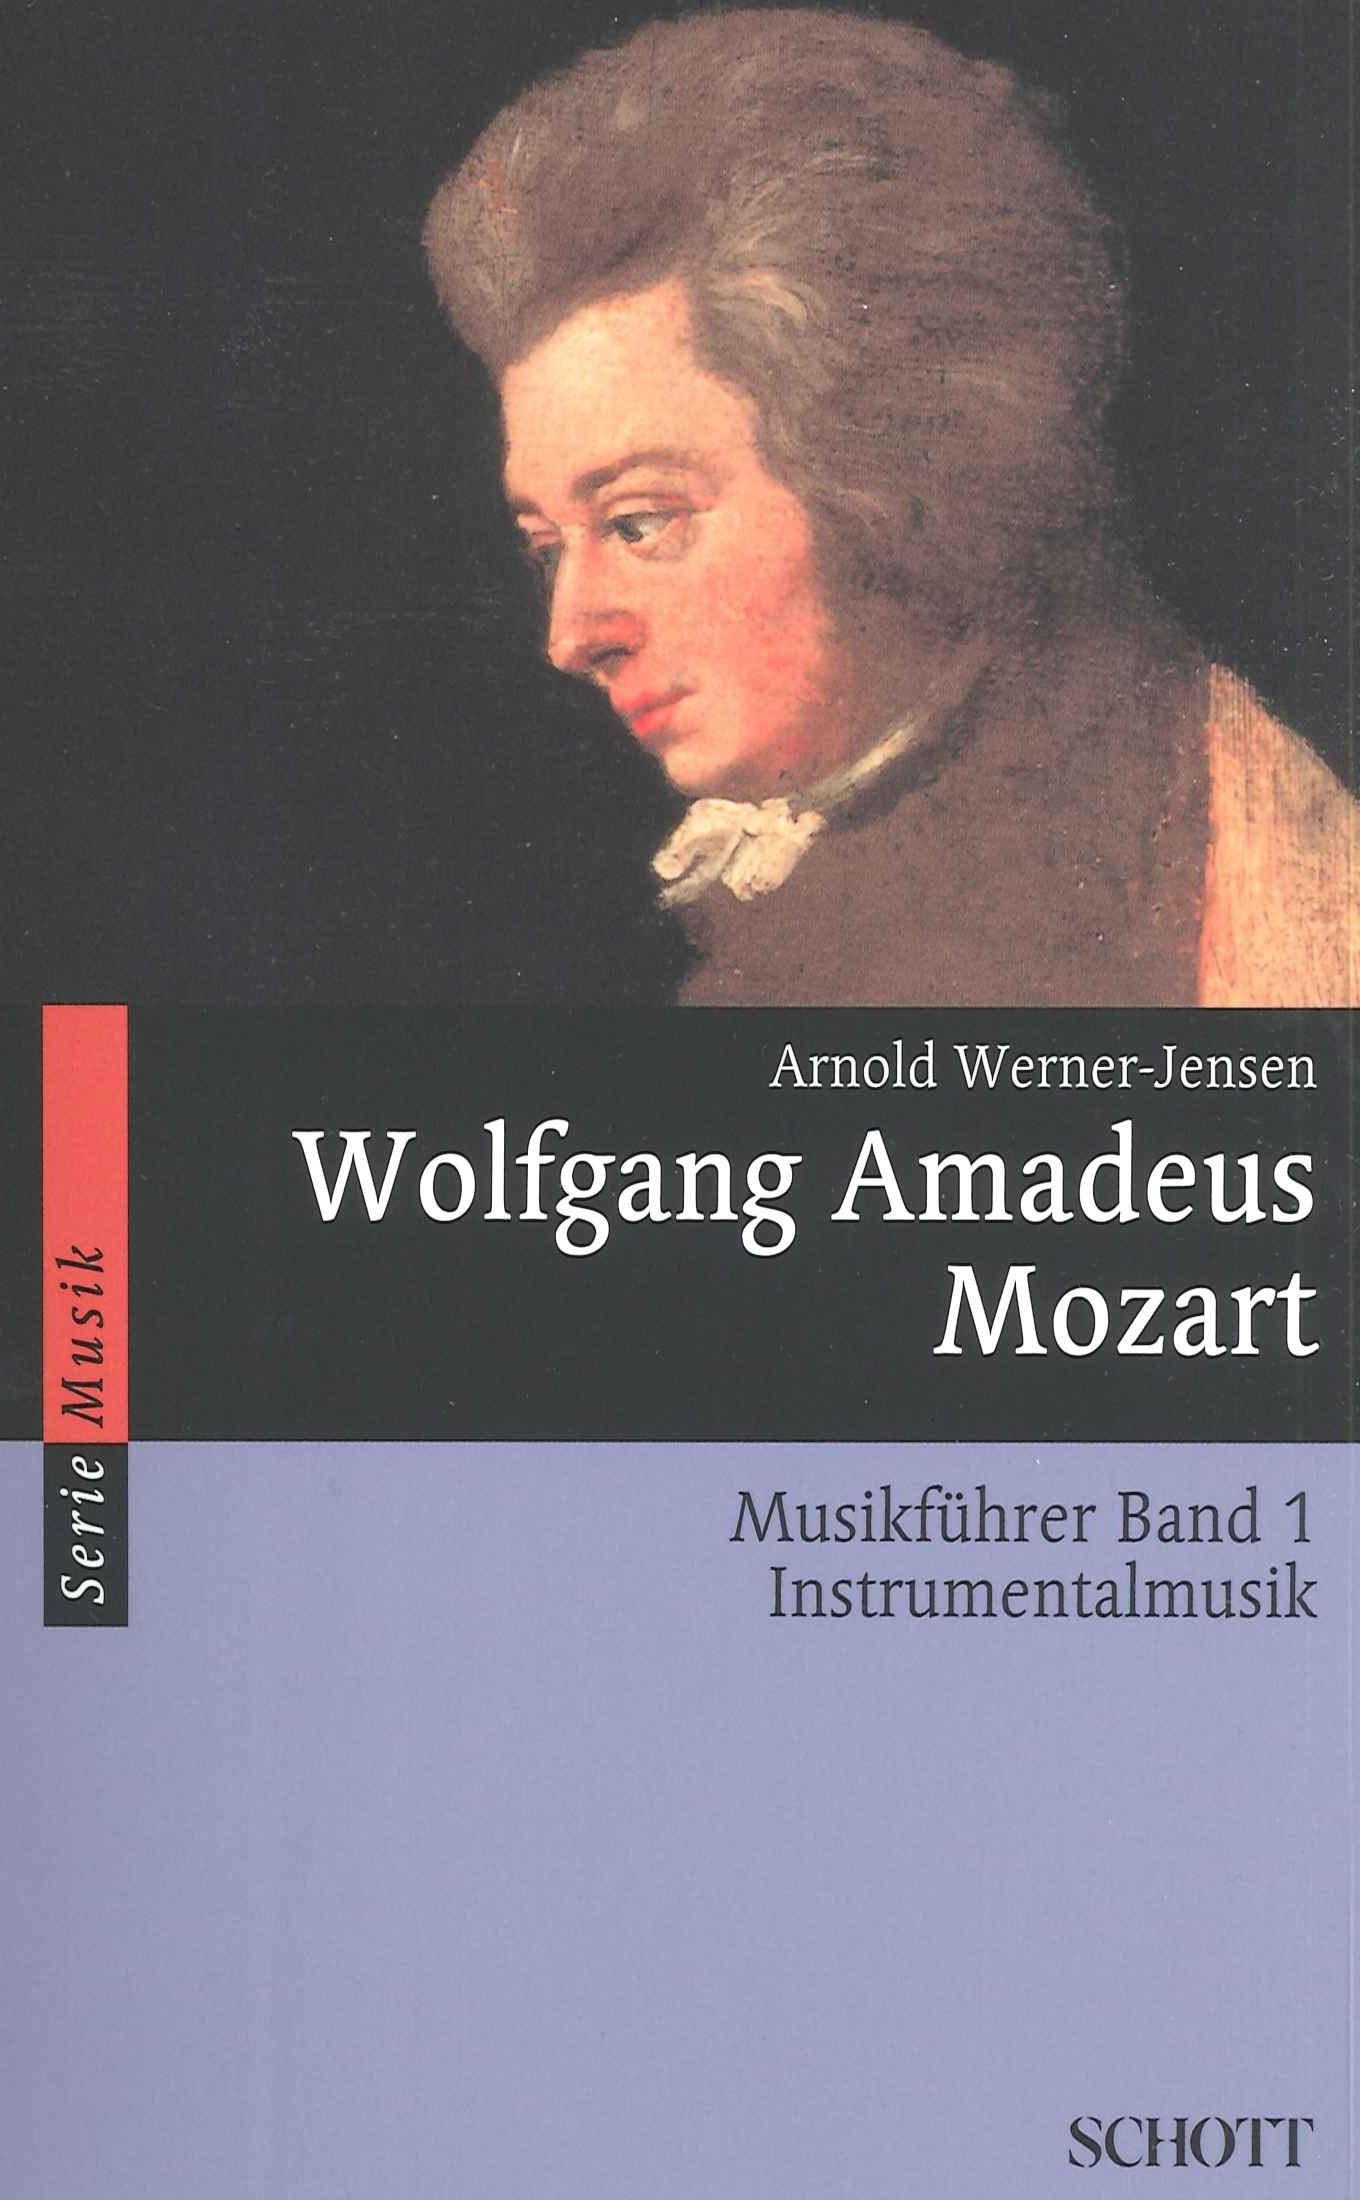 arnold-werner-jensen-wolfgang-amadeus-mozart-musik_0001.JPG